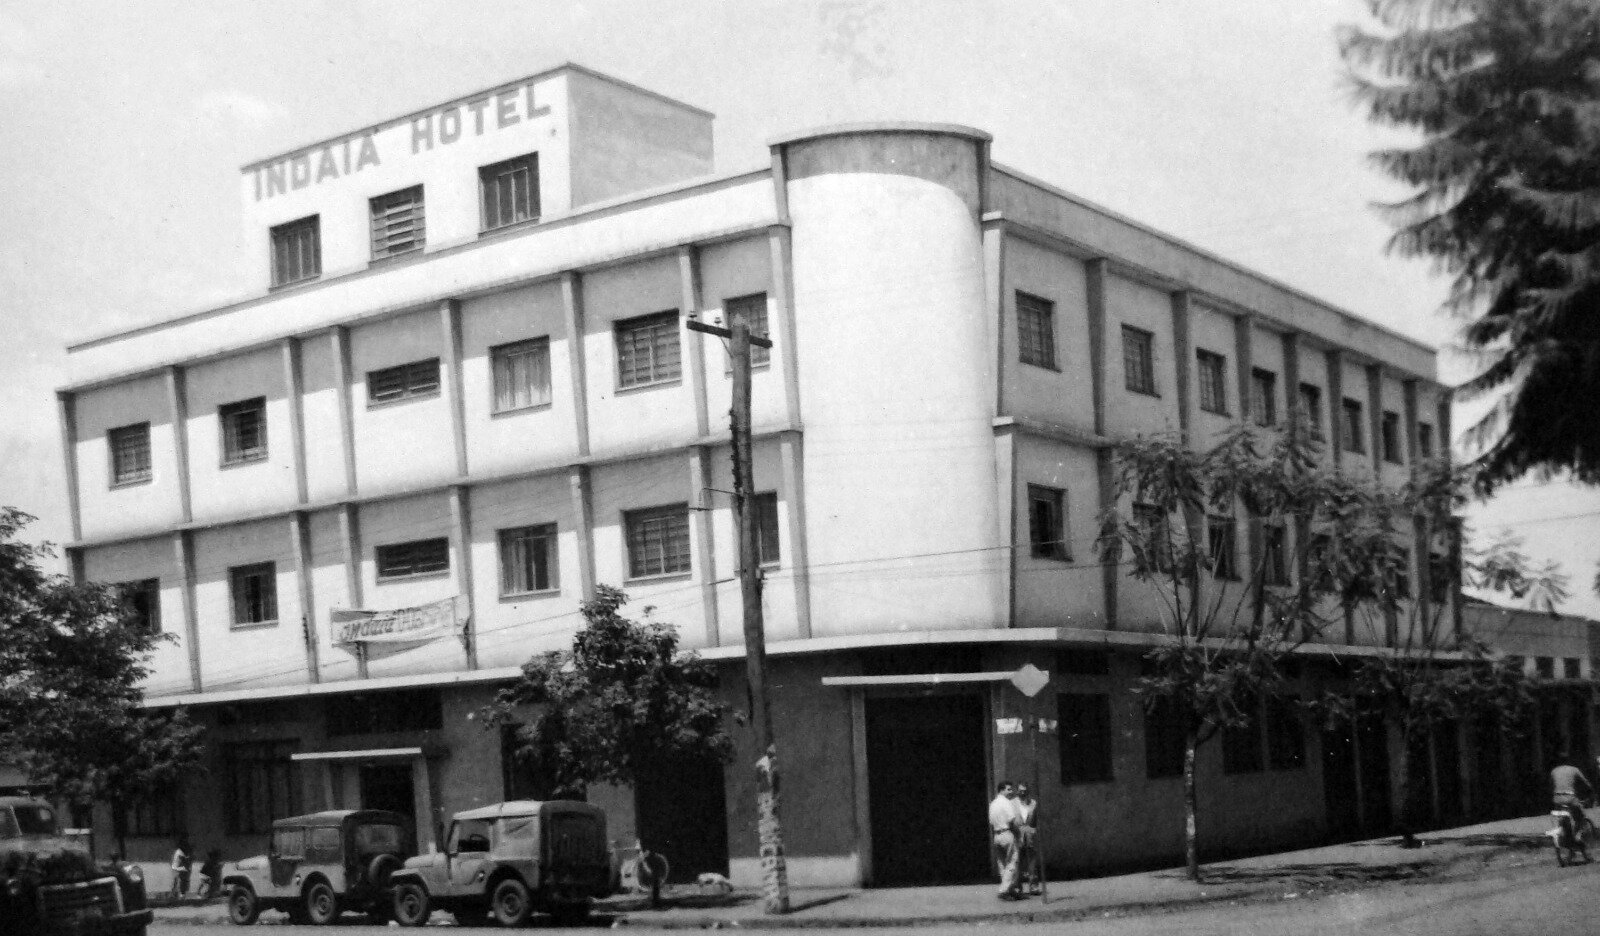 Indaiá Hotel - 1959 (melhor resolução)